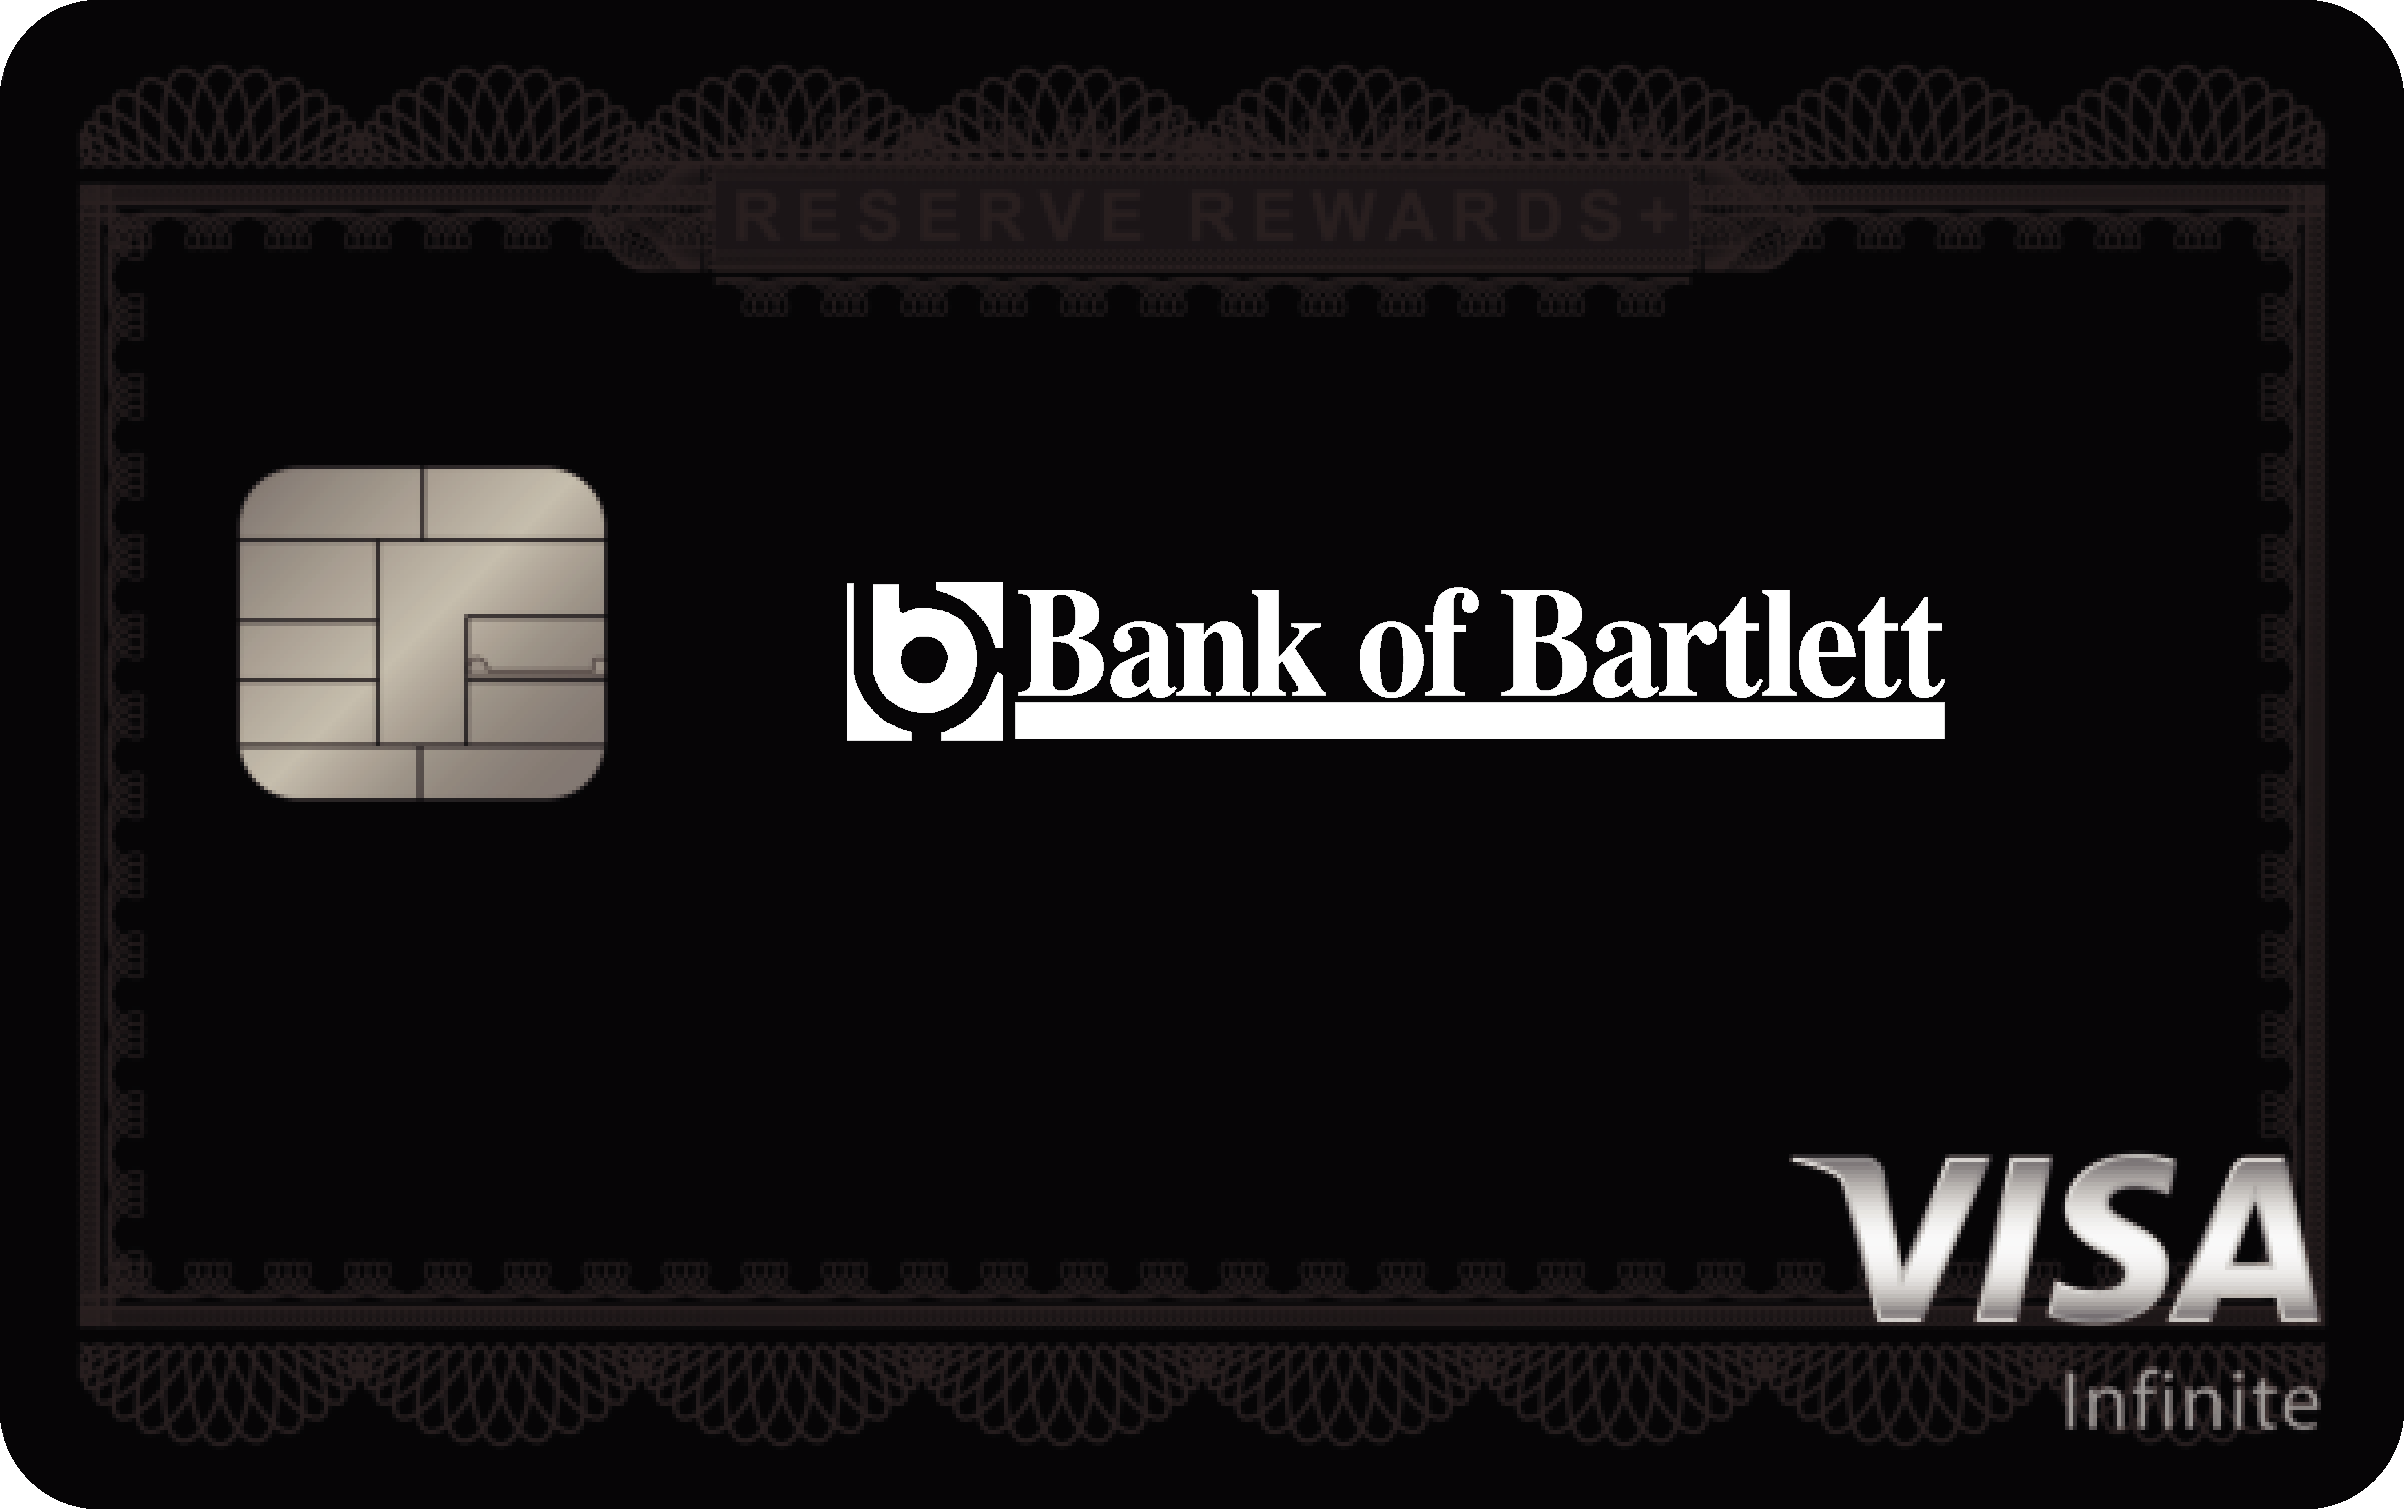 Bank of Bartlett Reserve Rewards+ Card